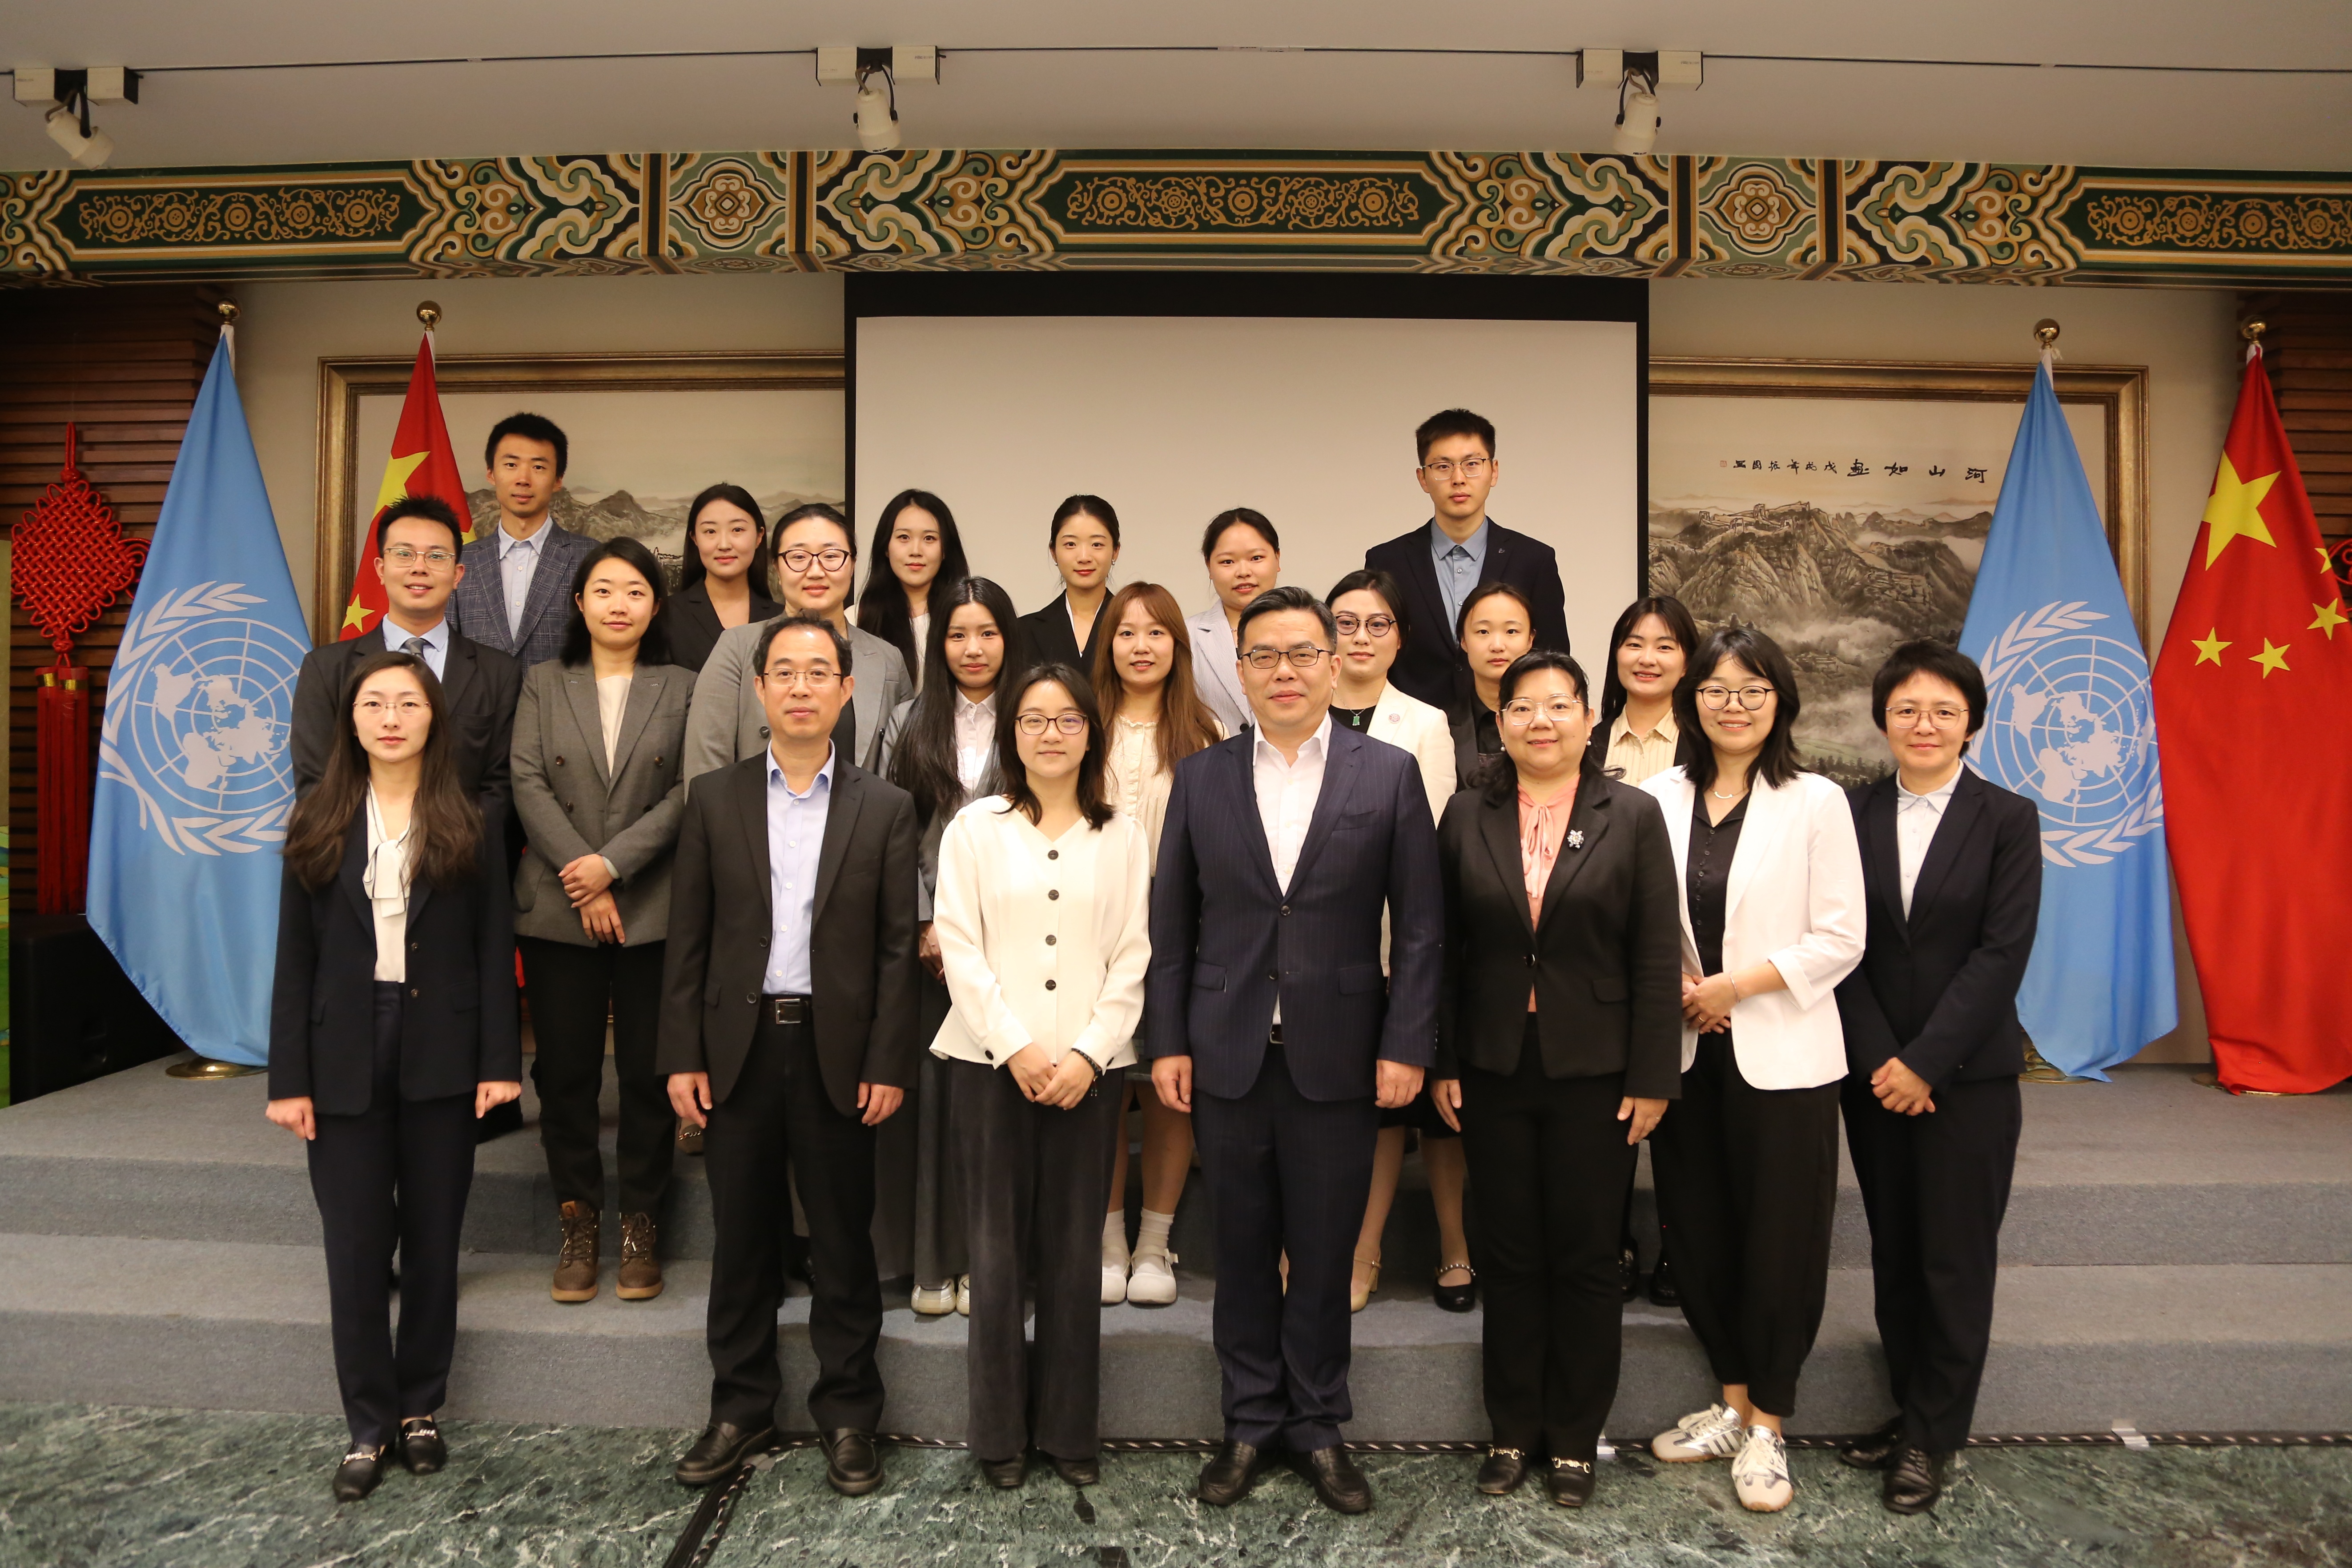 中国常驻日内瓦代表团青年外交官对话清华万科卫健学院学生团